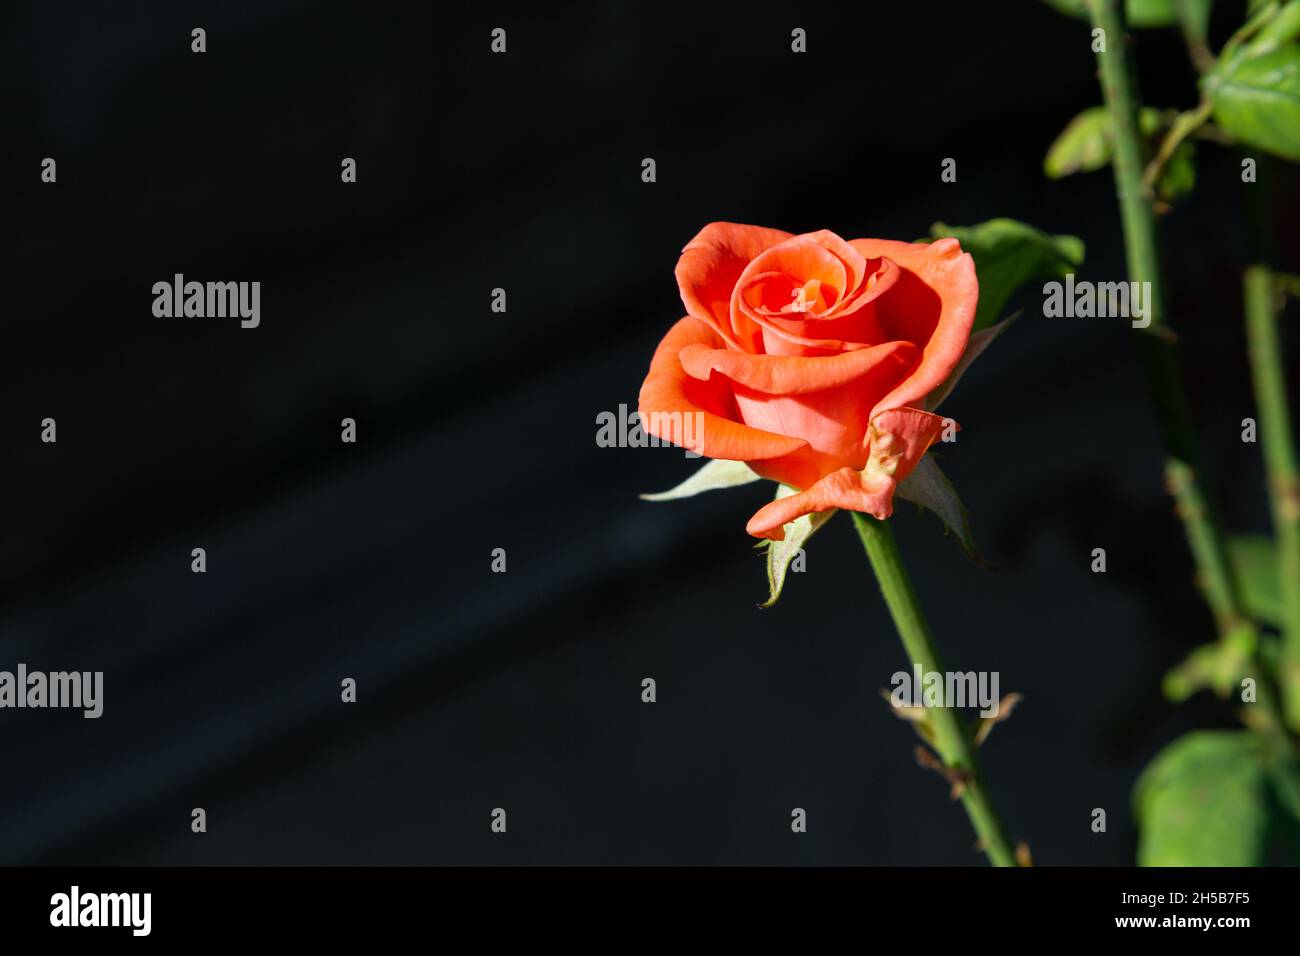 Frisch blühte Orangenrose. Die orangefarbene Rose steht für Begehren, Enthusiasmus und Stolz. Stockfoto